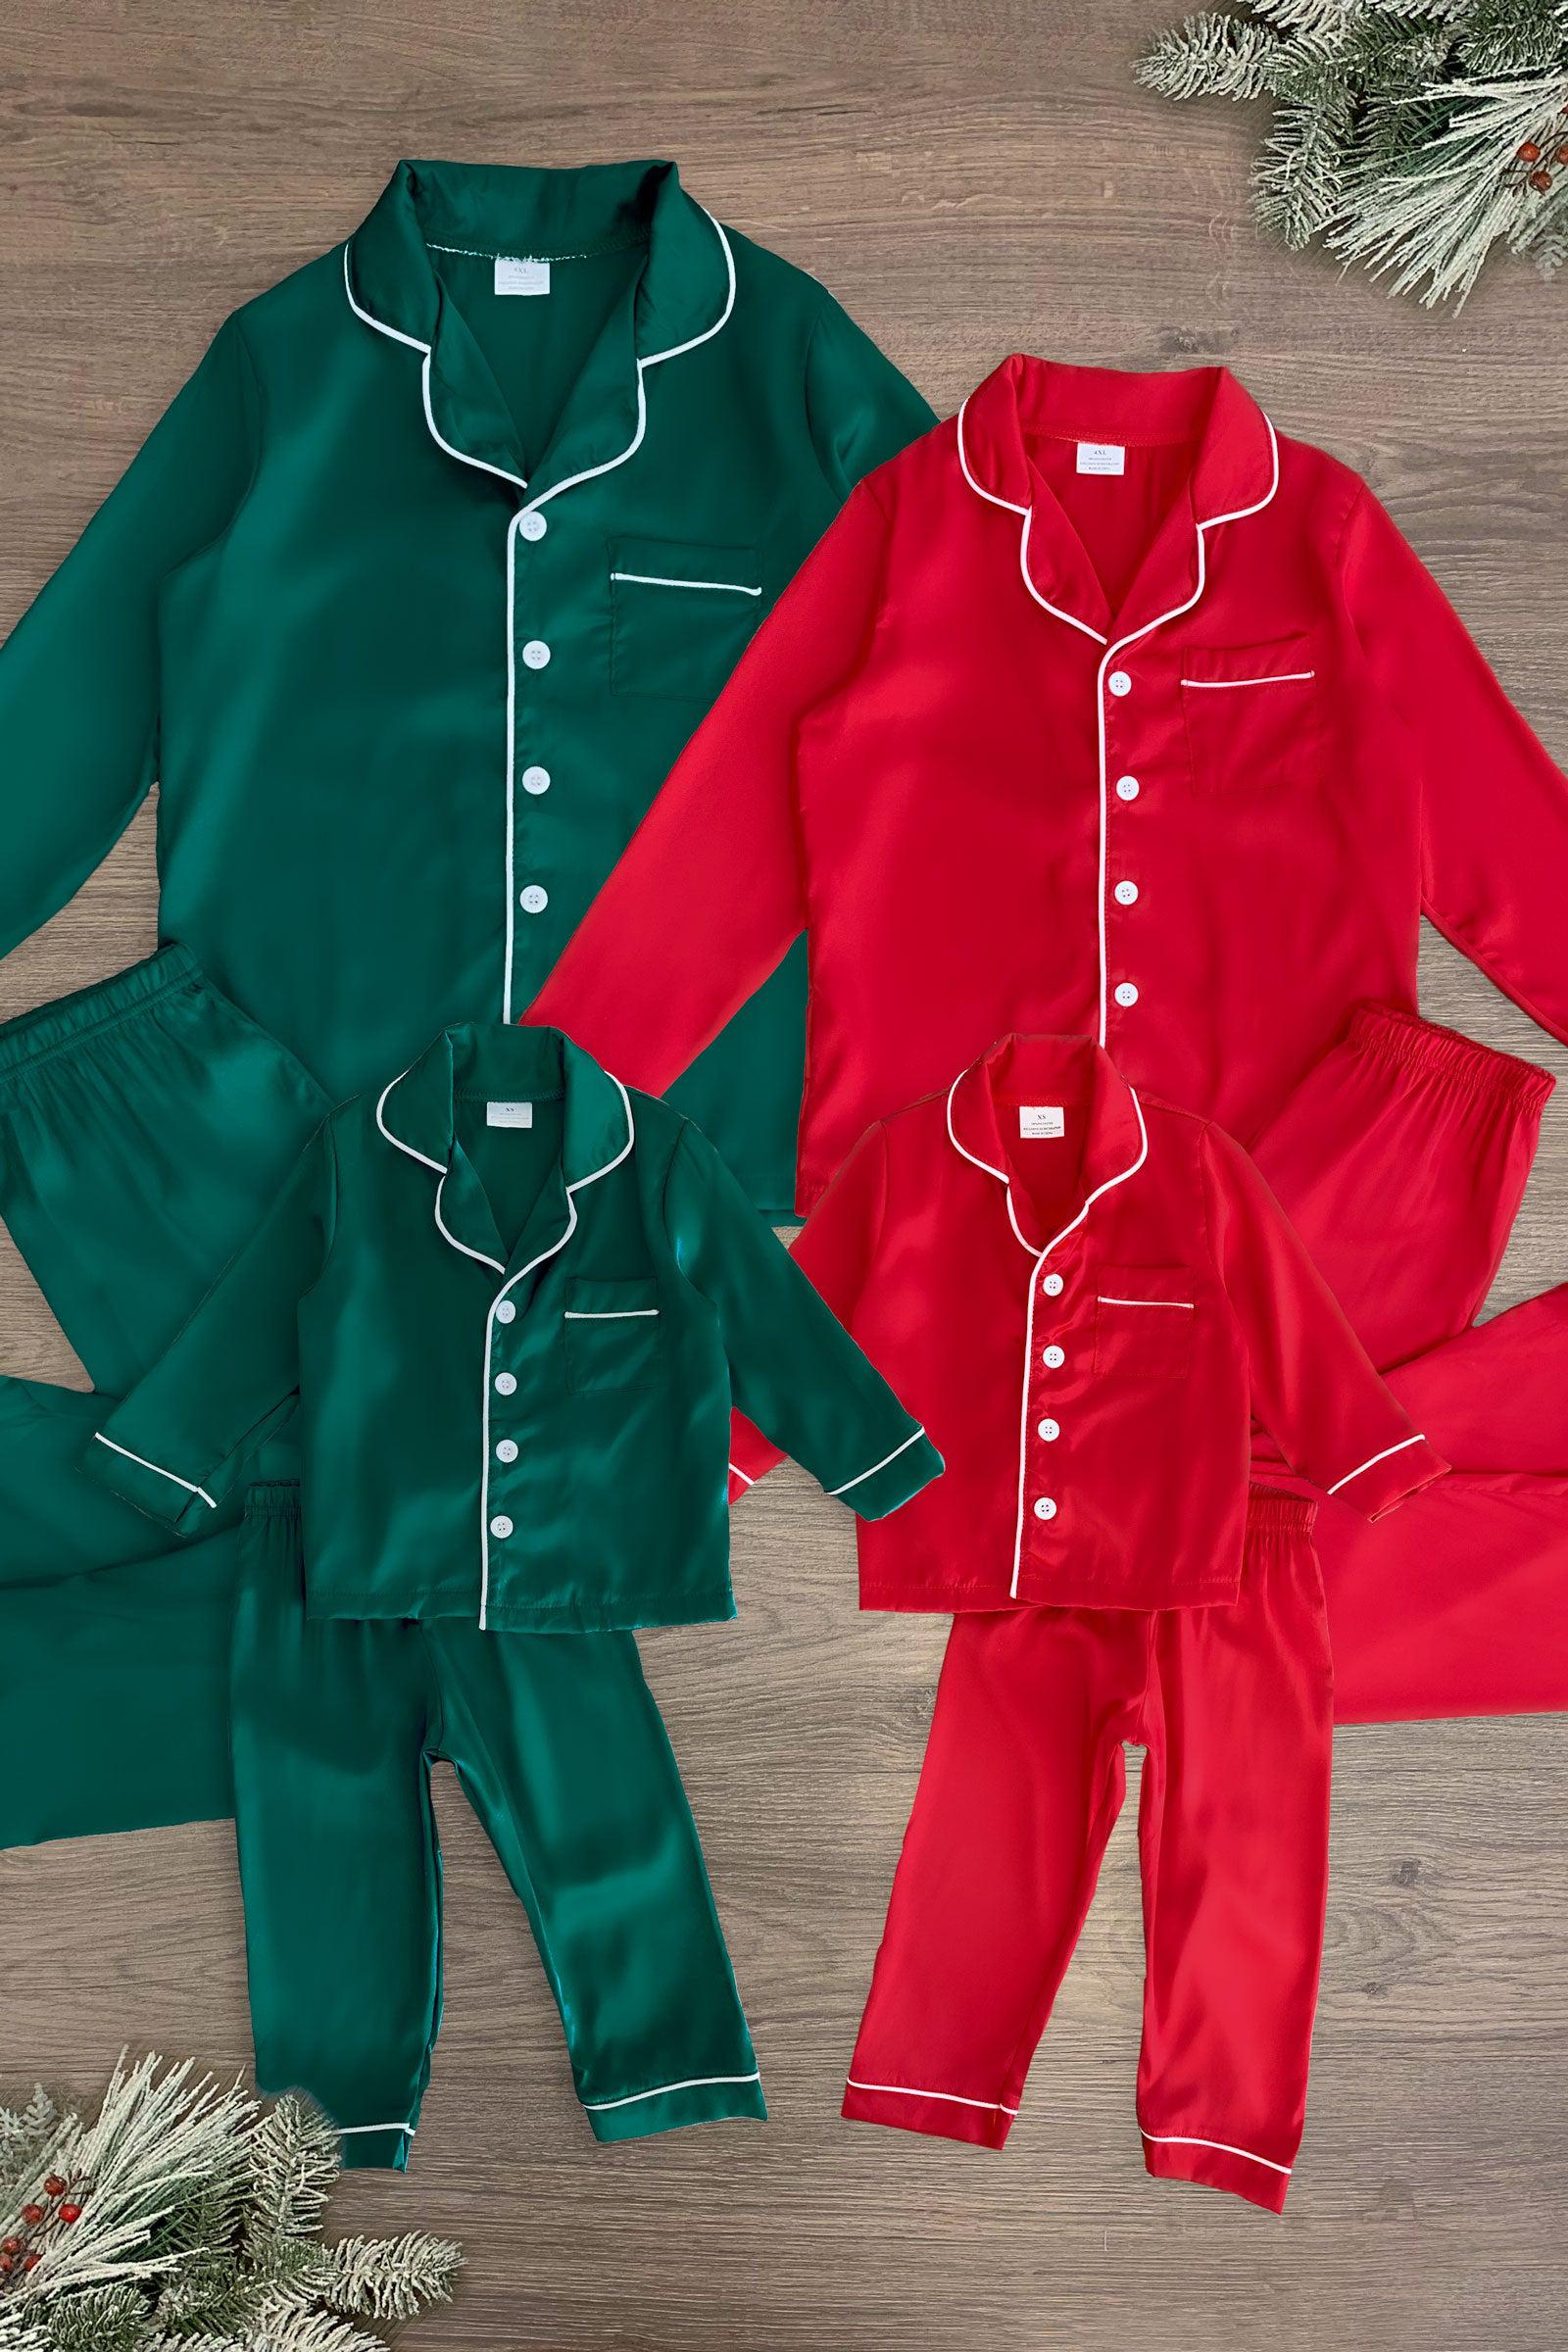 Matching silk pajamas for couples christmas